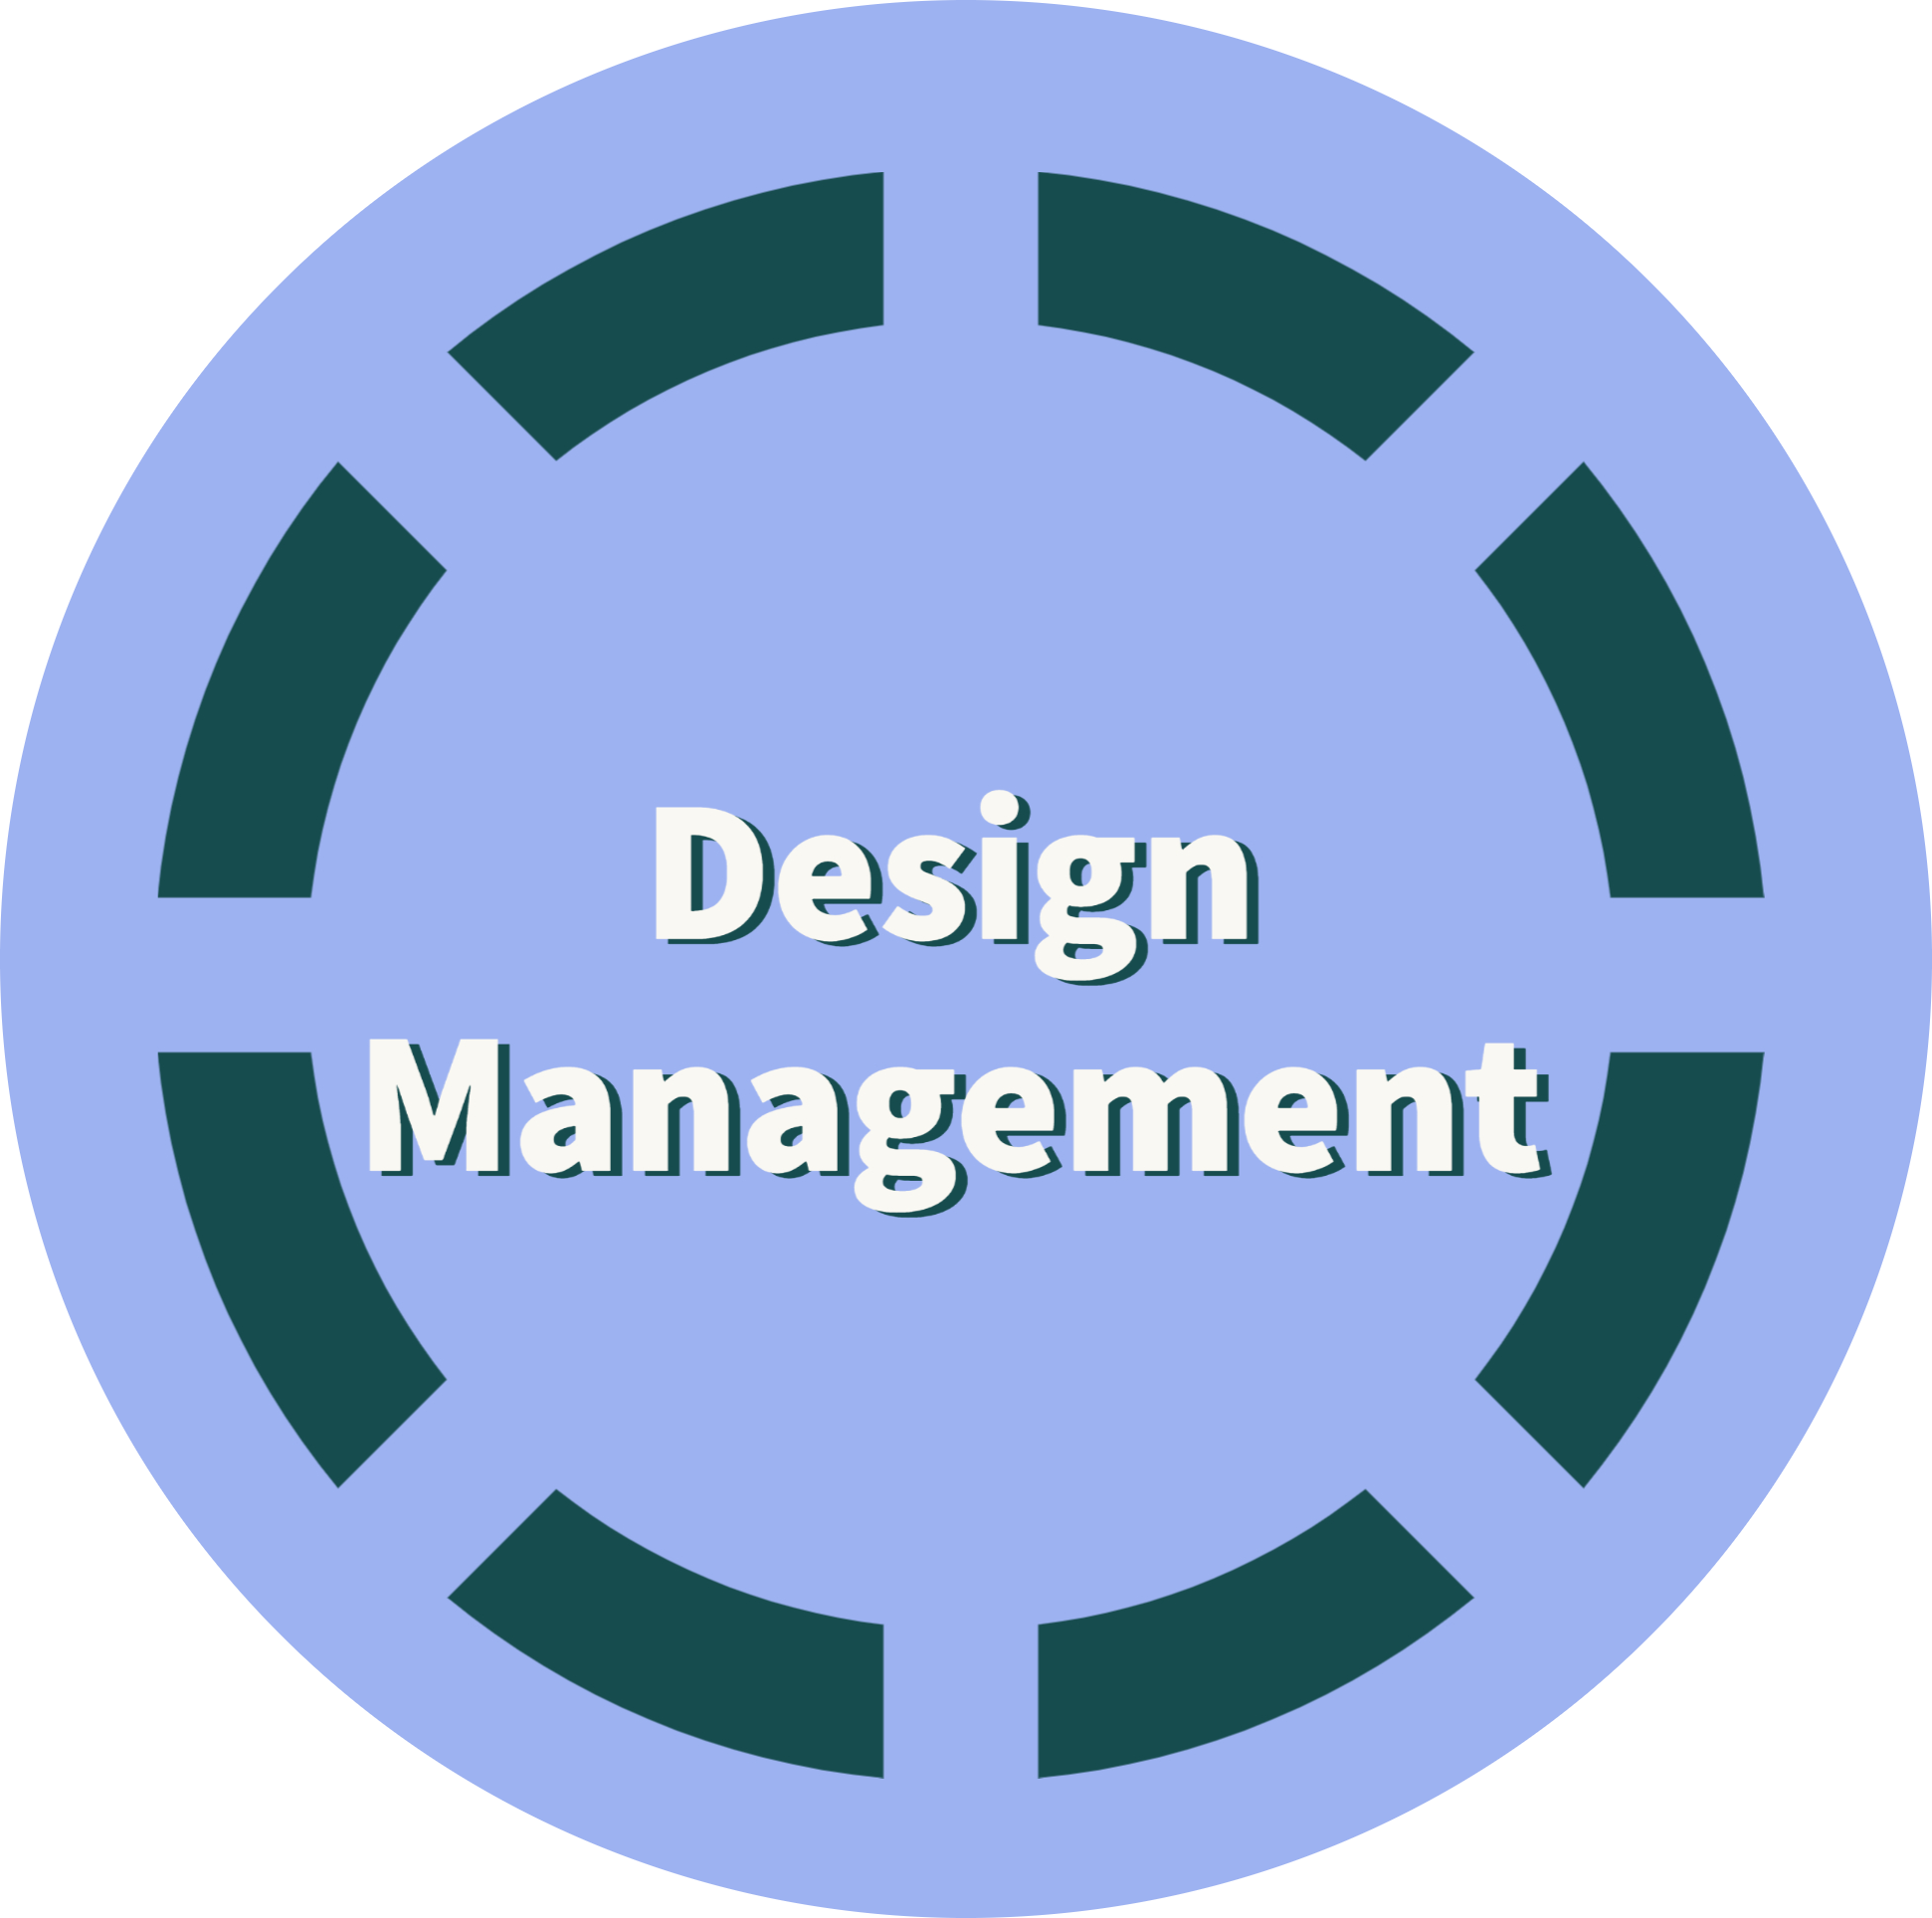 Design Management Services